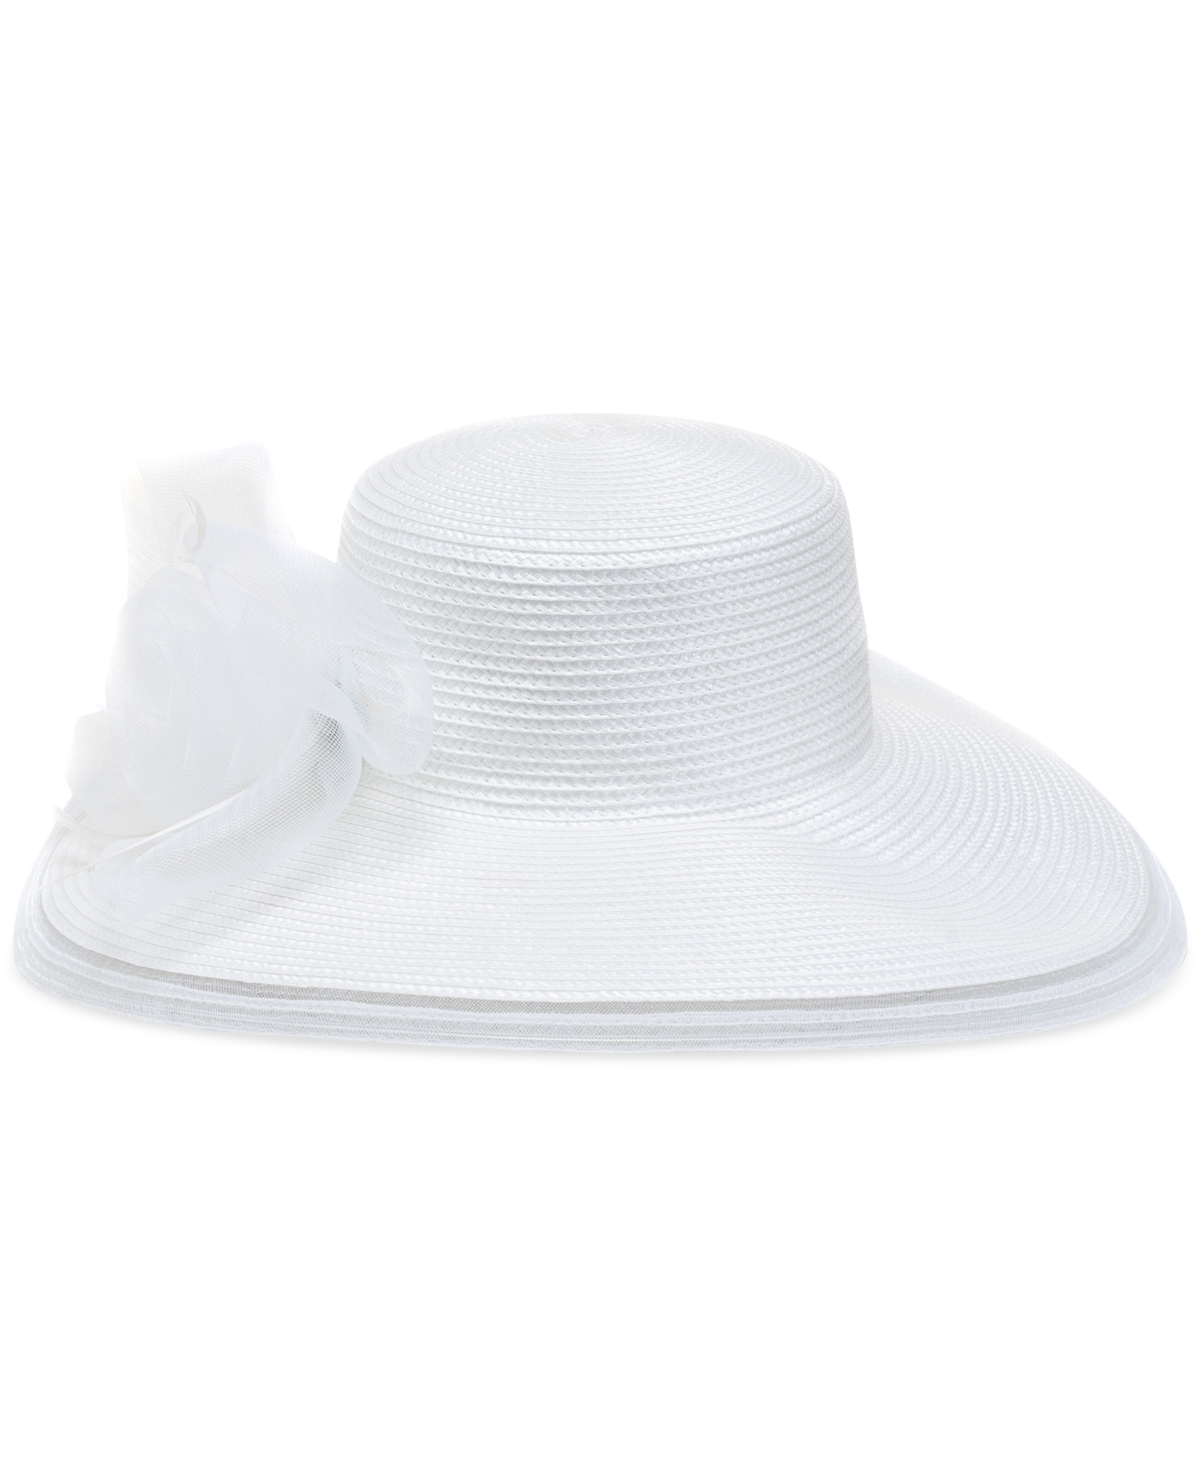 Women's Wide-Brim Dressy Hat - White